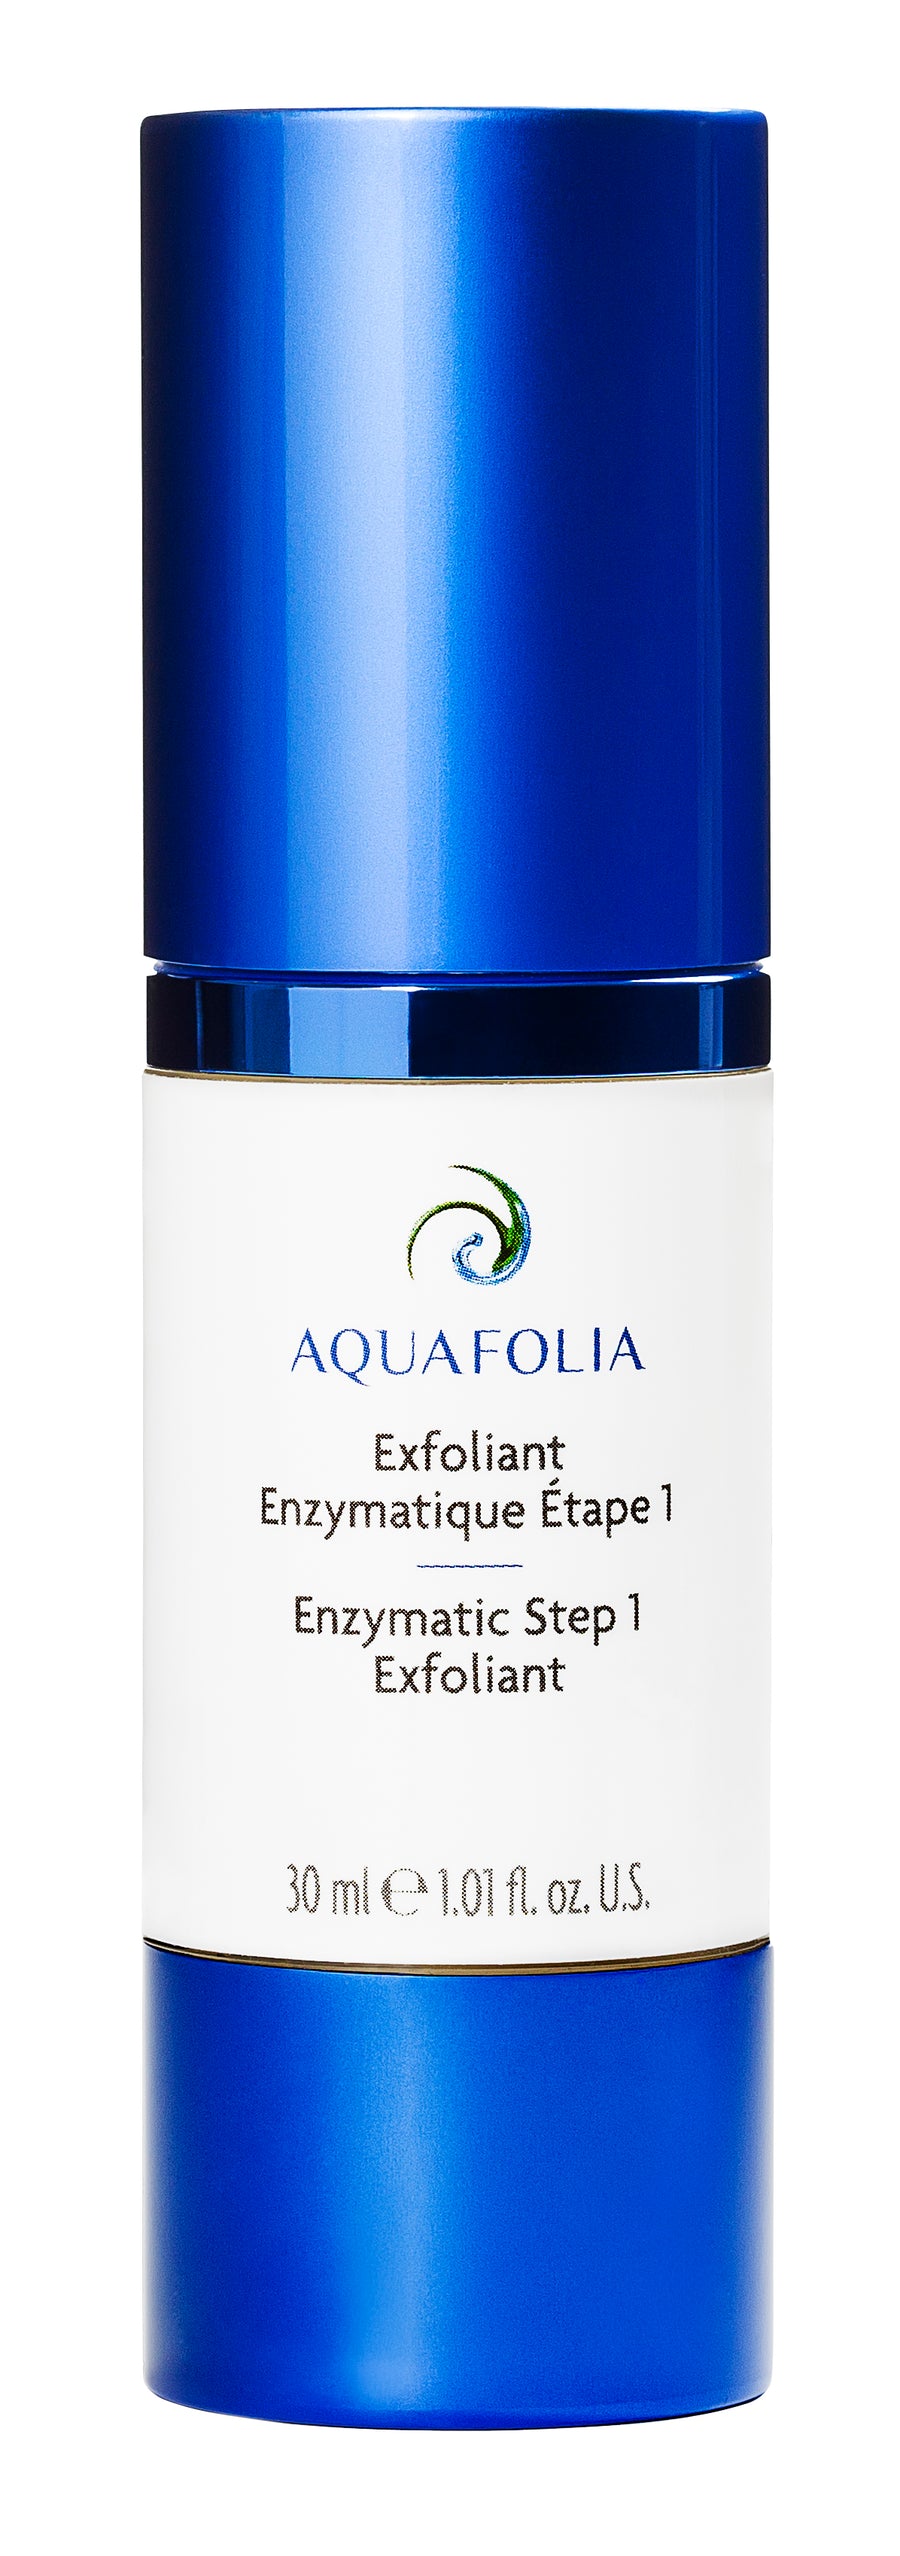 Aquafolia- Exfoliant Enzymatique Étape 1